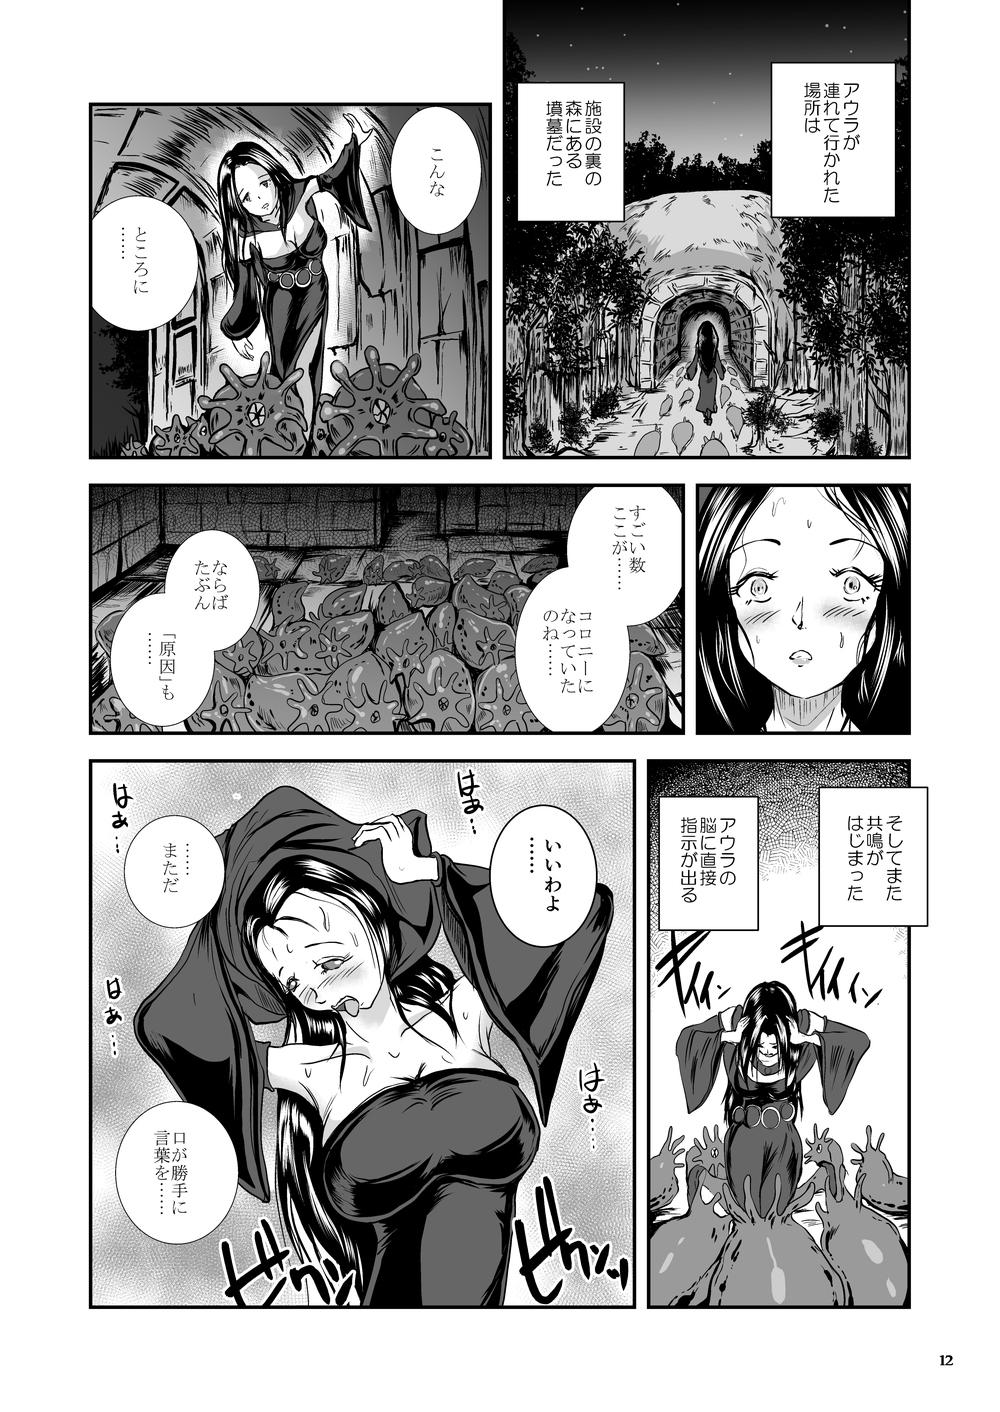 Oonamekuji to Kurokami no Mahoutsukai - Parasitized Giant Slugs V.S. Sorceress of the Black Hair as Aura 58